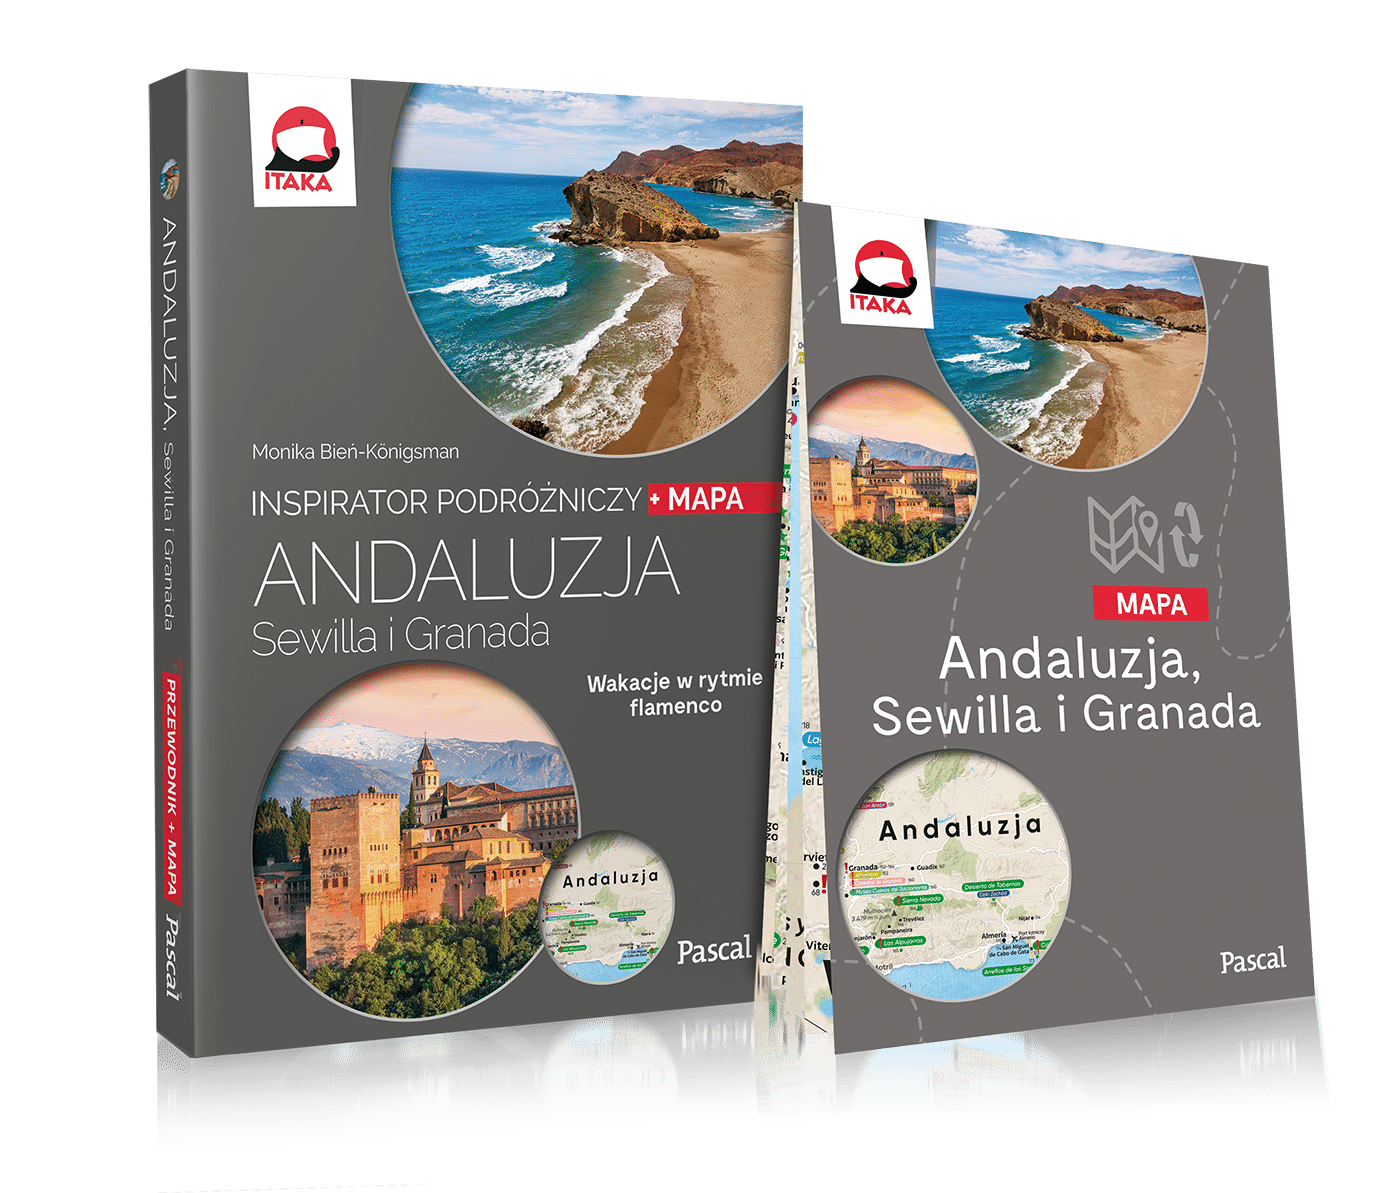 Andaluzja, Sewilla i Granada. Inspirator podróżniczy